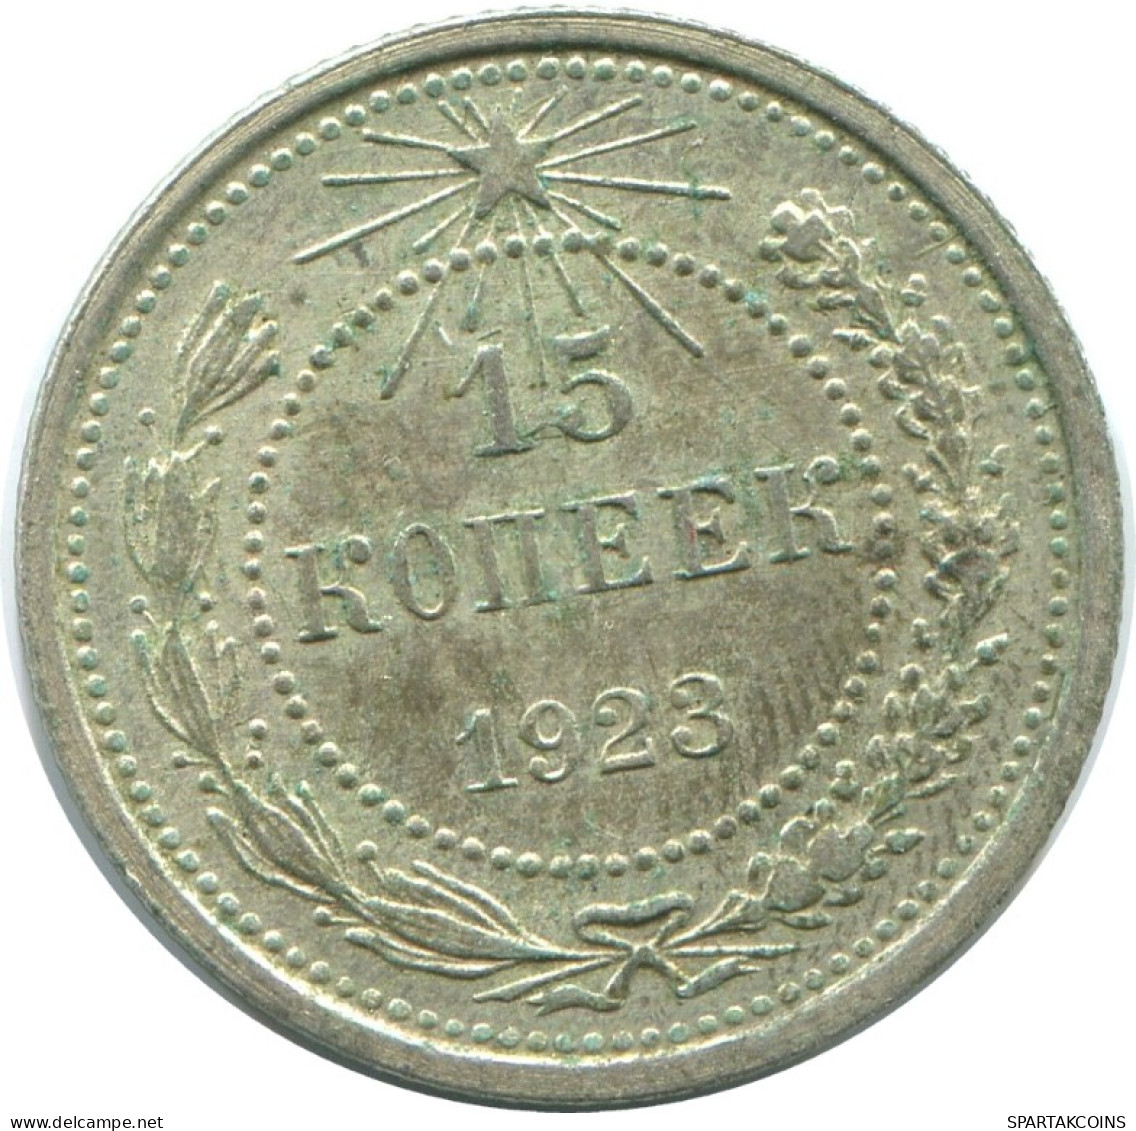 15 KOPEKS 1923 RUSSLAND RUSSIA RSFSR SILBER Münze HIGH GRADE #AF130.4.D.A - Russia